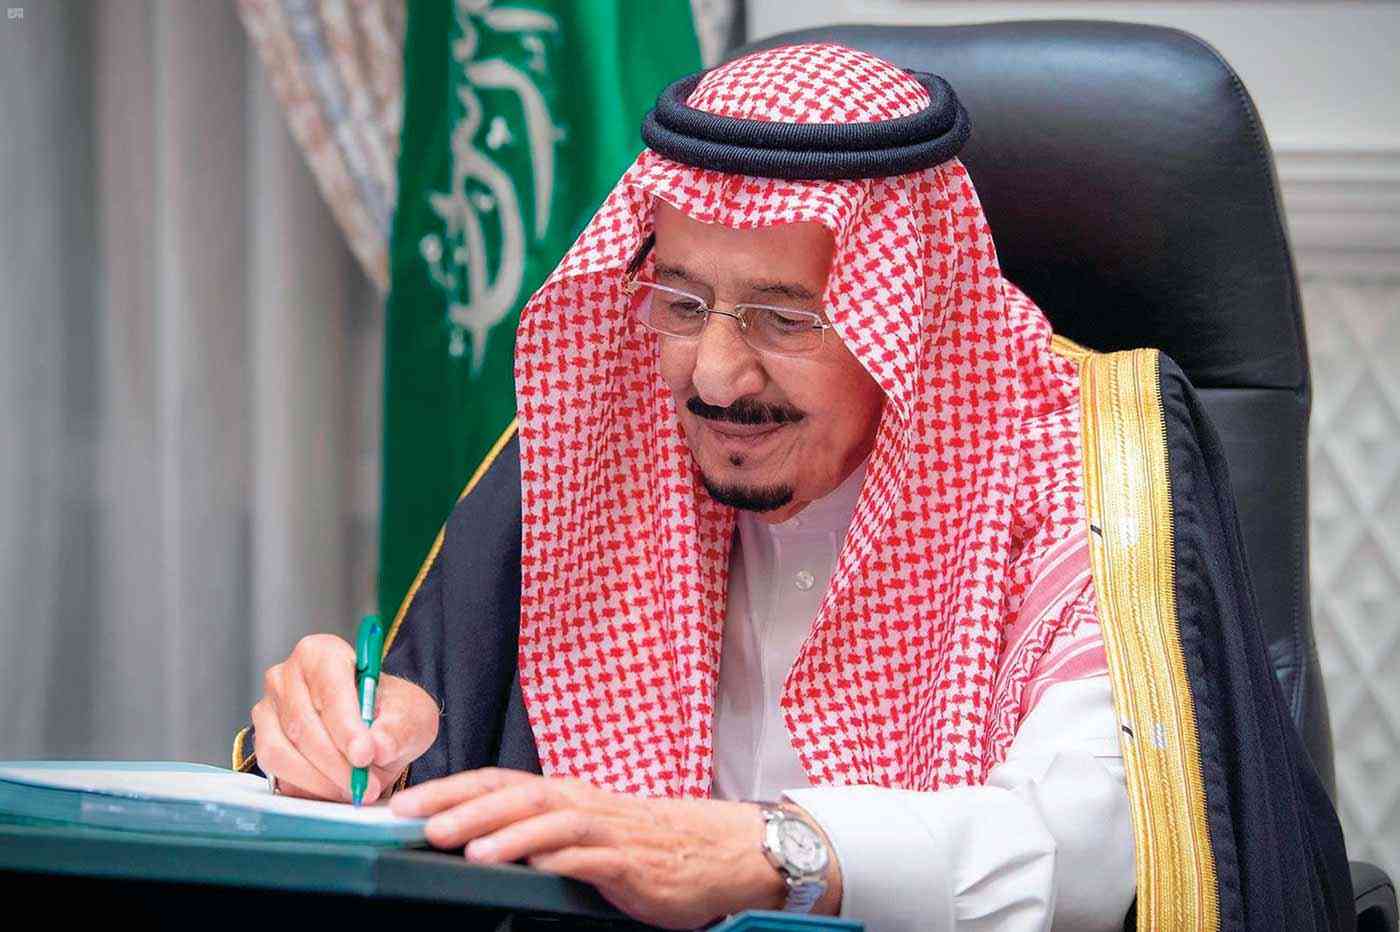 السعودية تمدد صلاحية الإقامات للوافدين والتأشيرات بدون مقابل